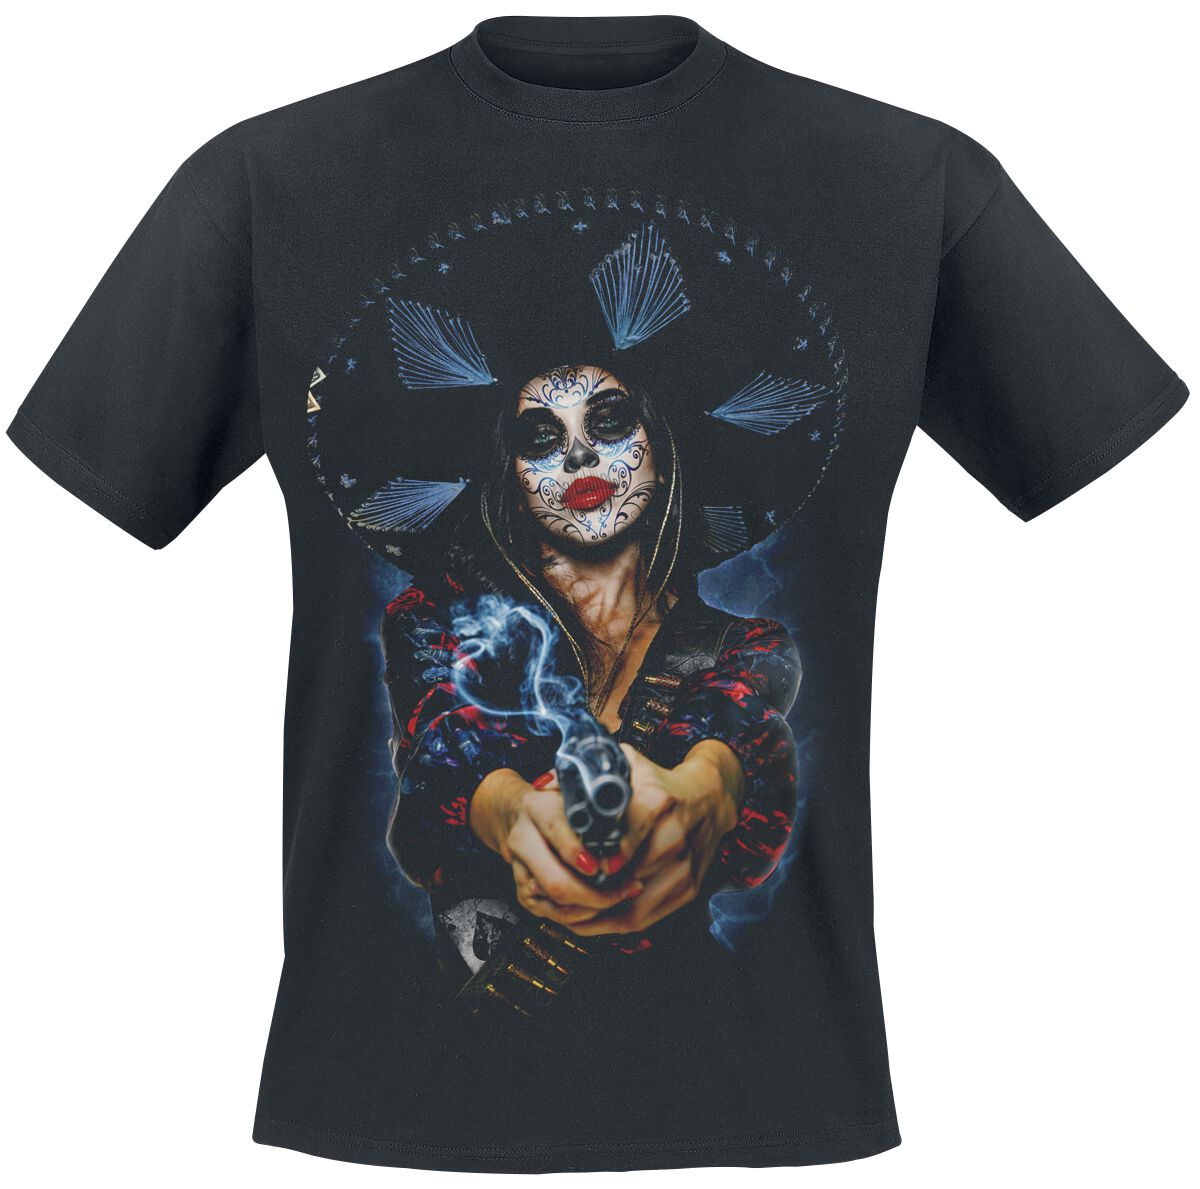 The Offspring T-Shirt - Bad Times - S bis XXL - für Männer - Größe XL - schwarz  - Lizenziertes Merchandise!